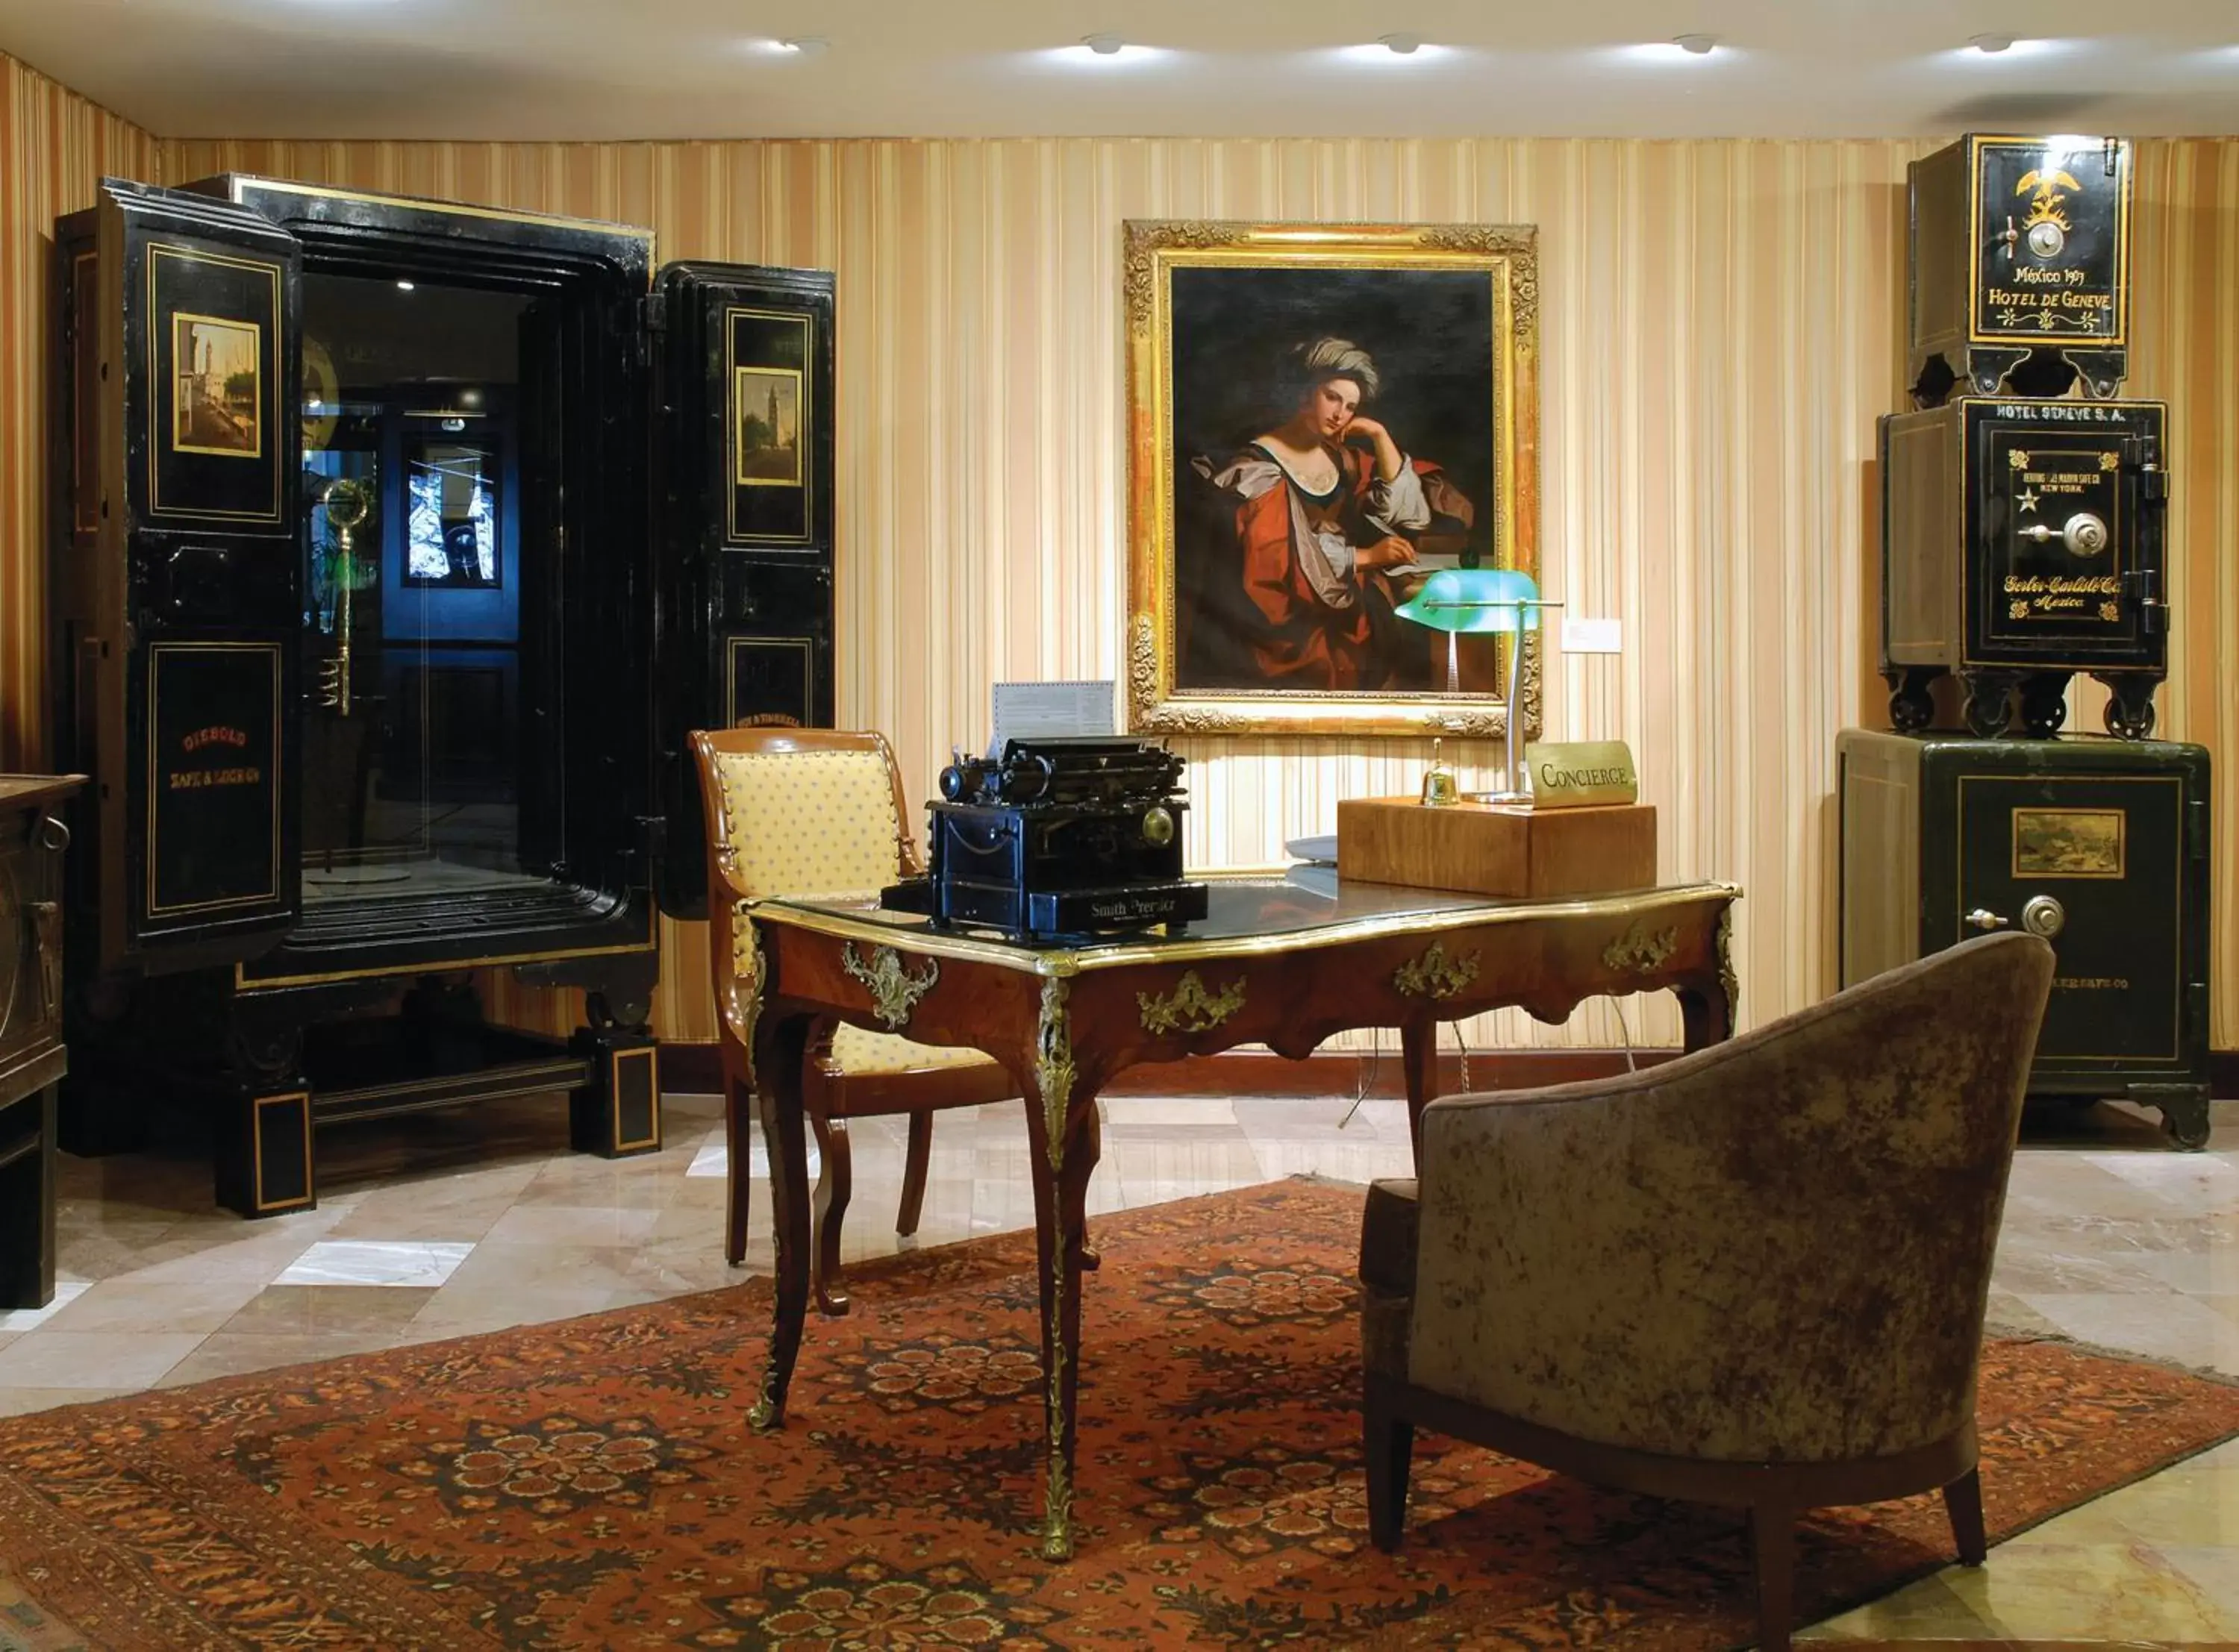 Lobby or reception in Hotel Geneve CD de Mexico